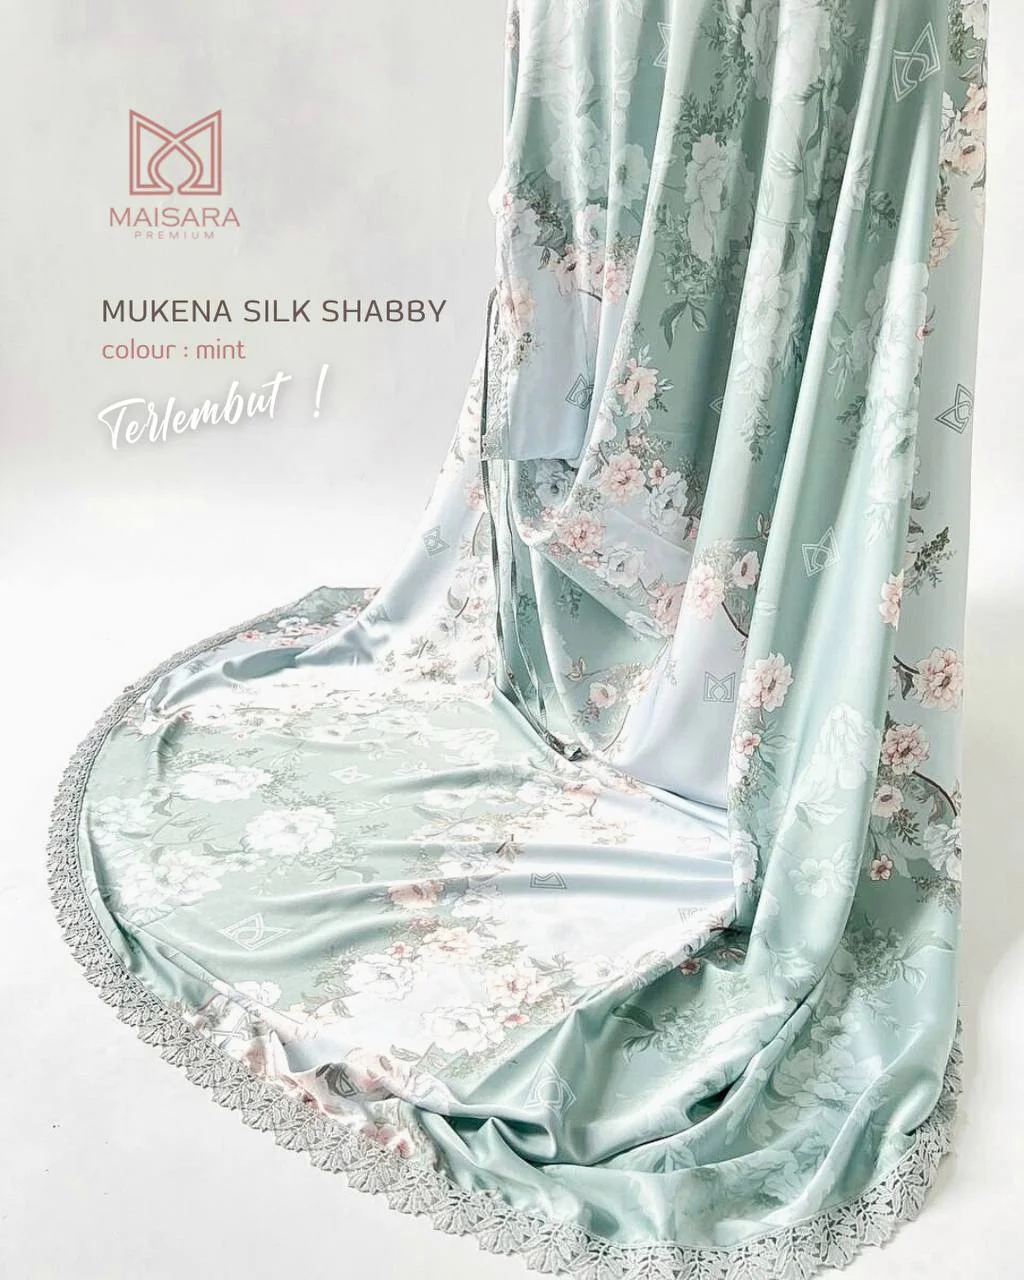 mukena silk shabby maisara - mint